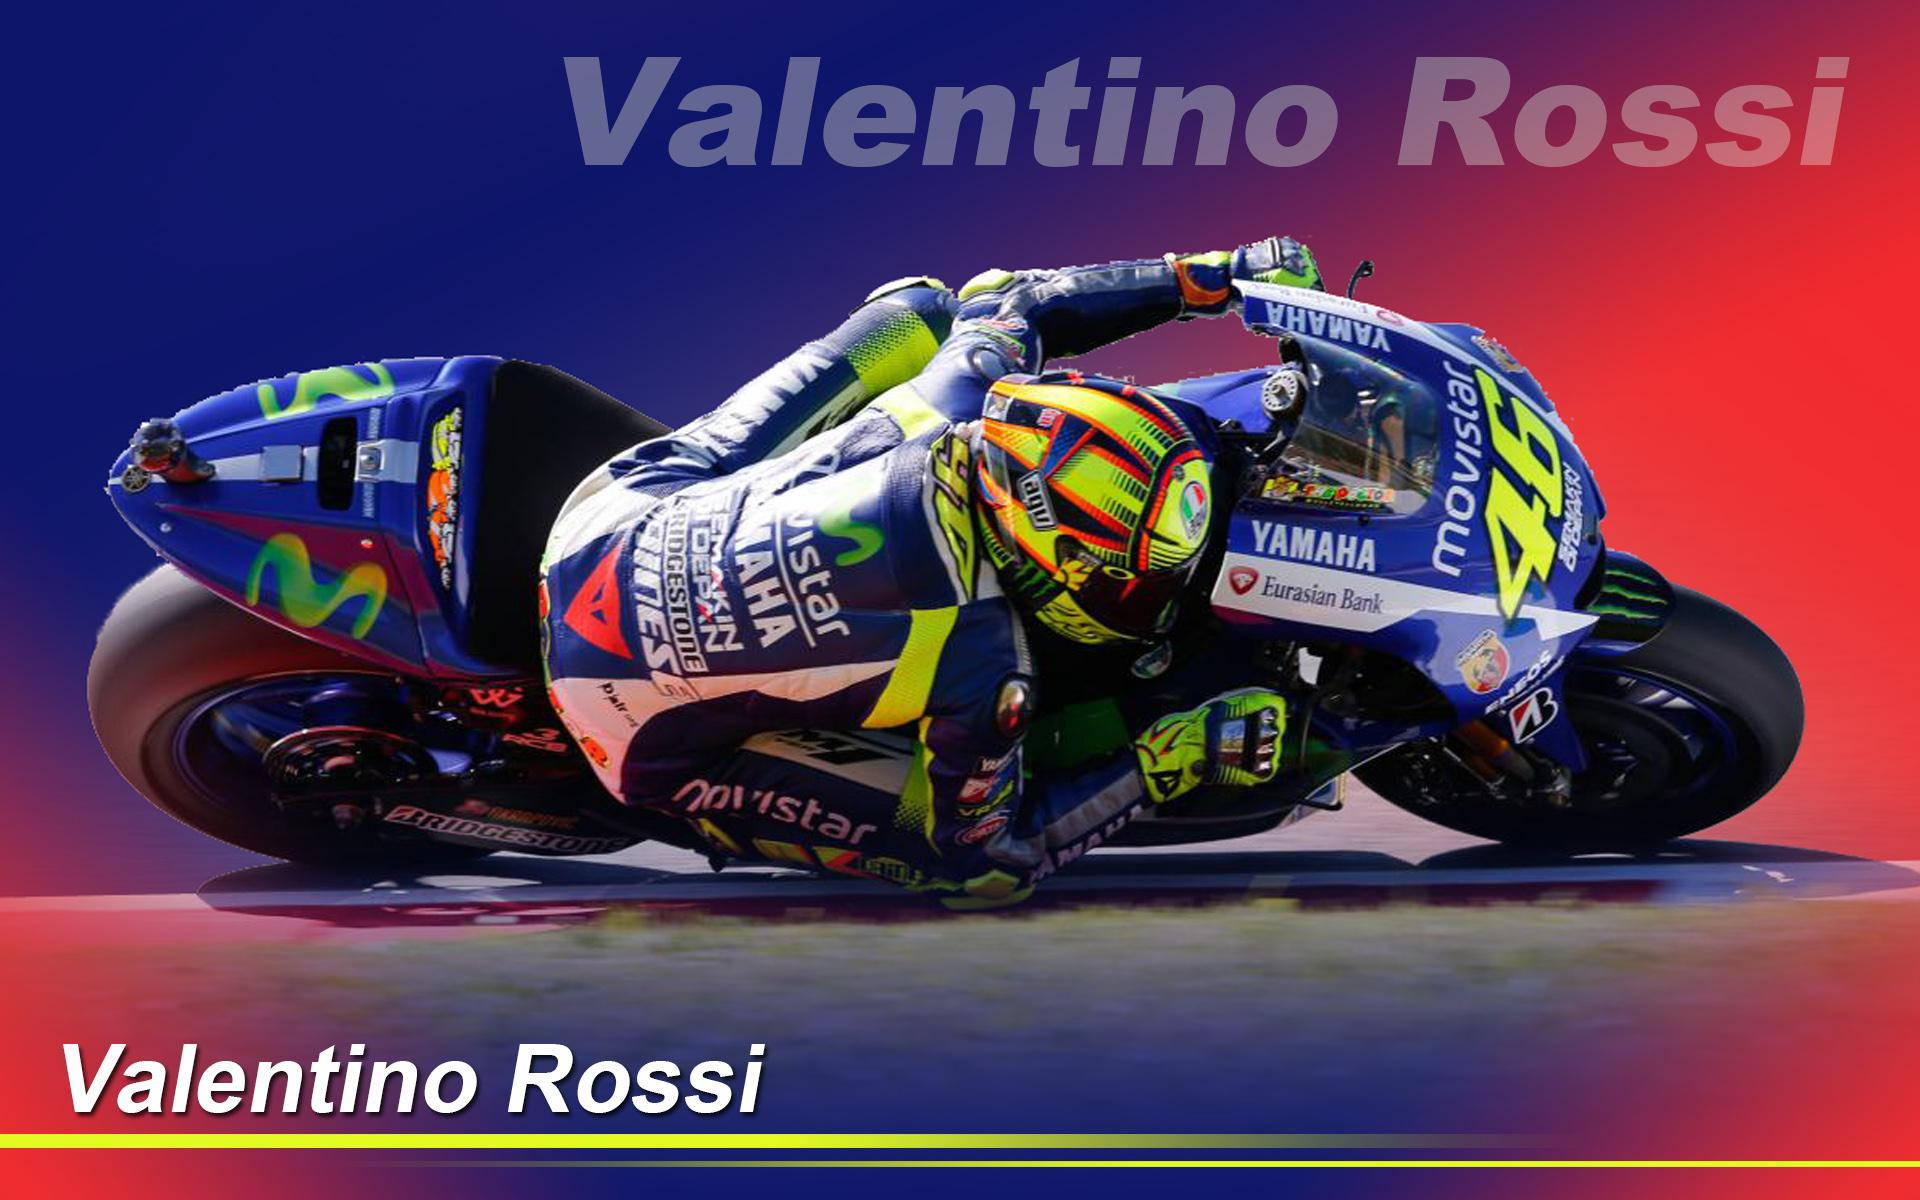 Valentino Rossi Wallpaper